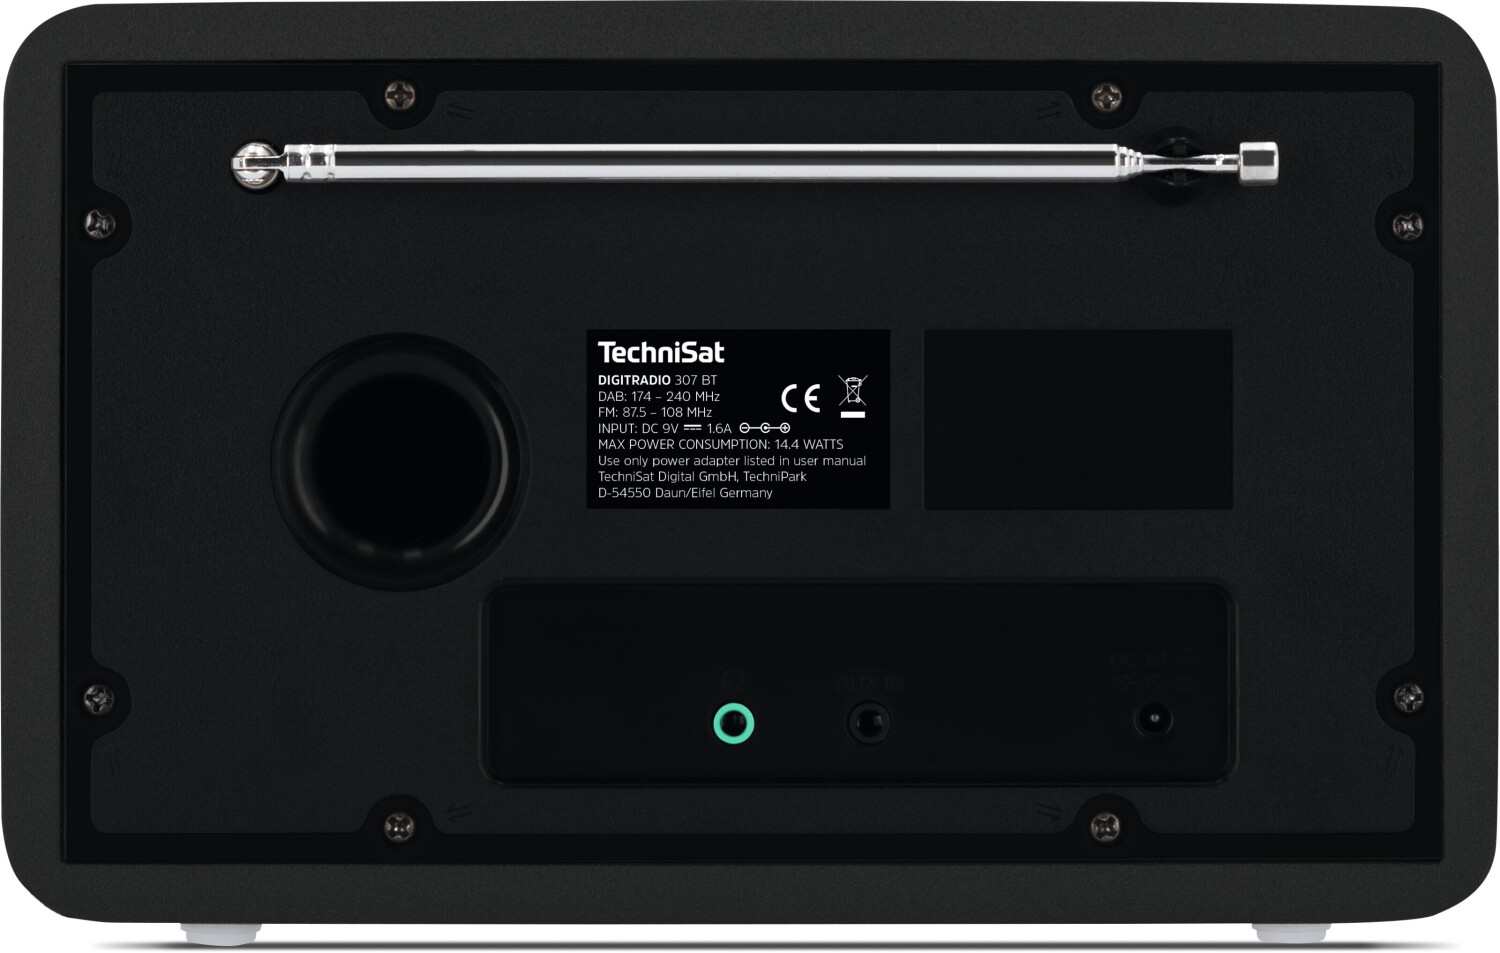 TechniSat DIGITRADIO 307 schwarz ab 63,00 € | Preisvergleich bei